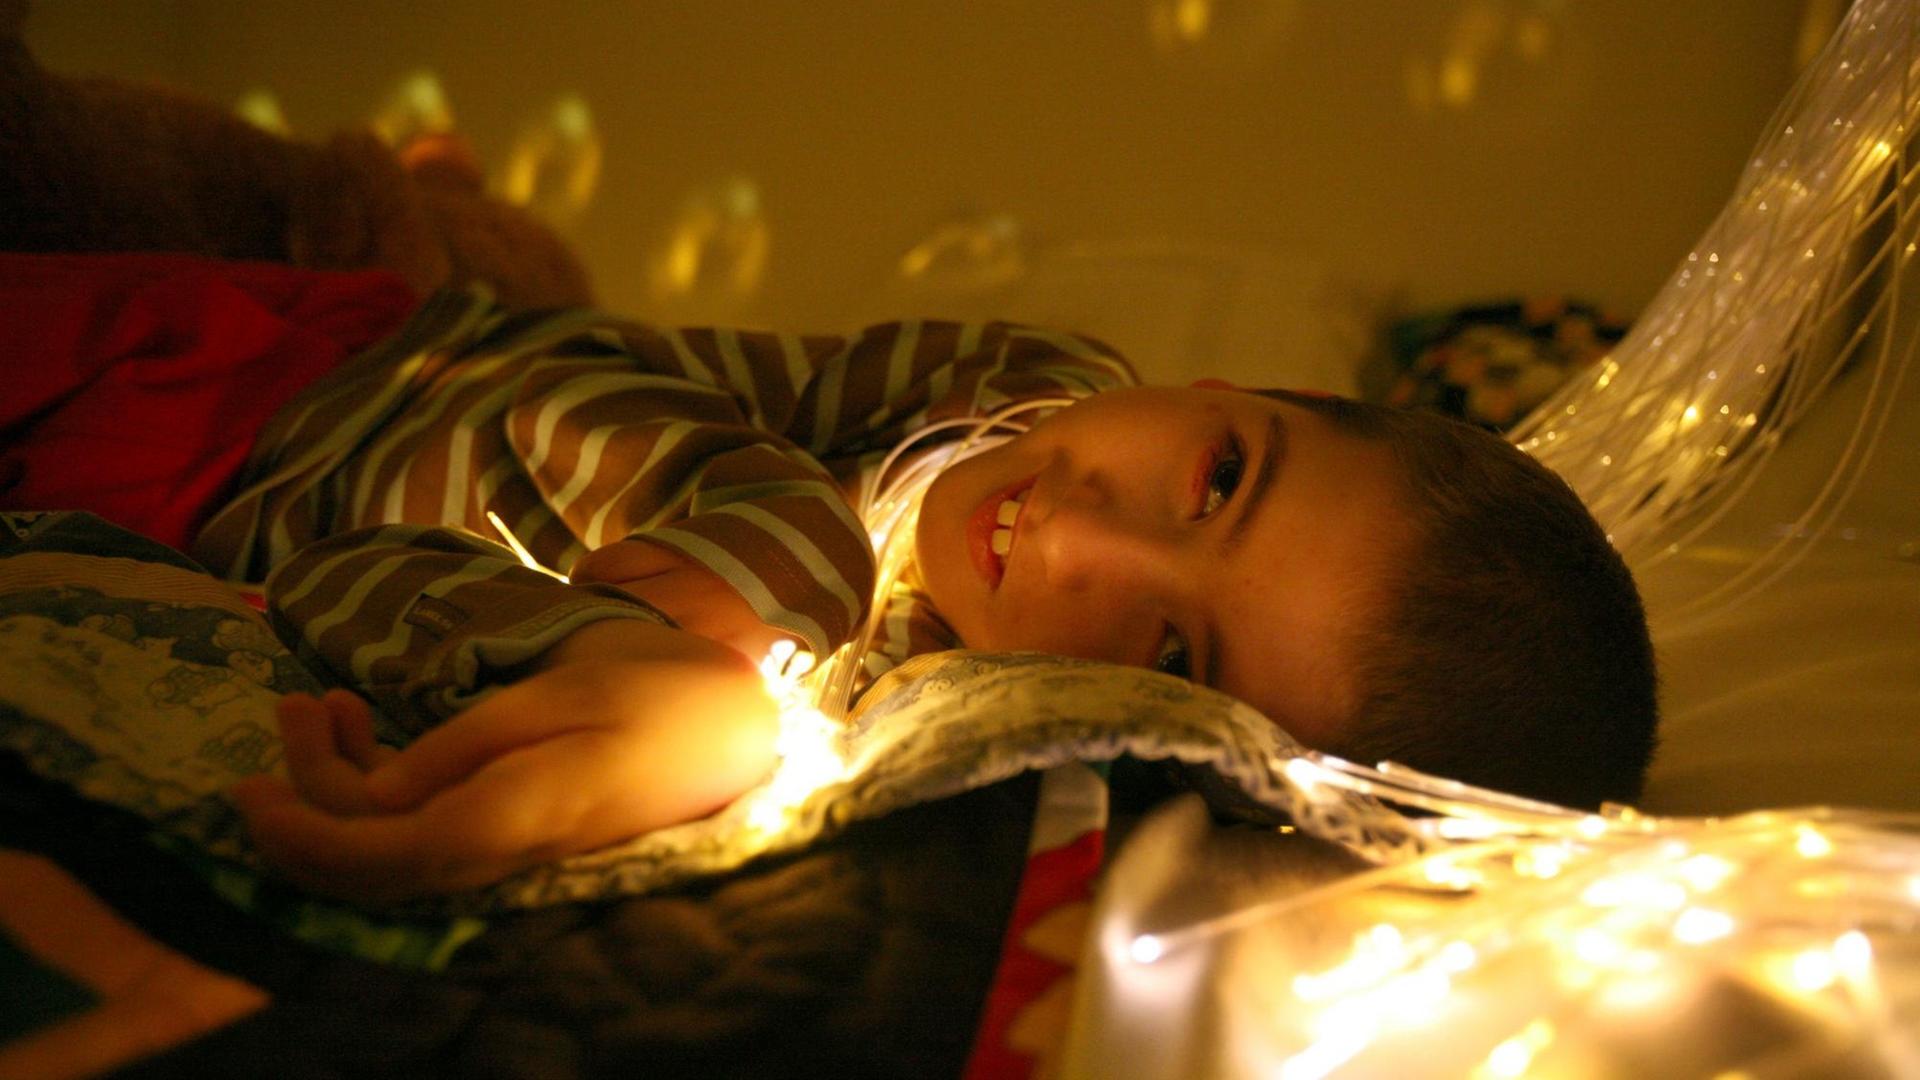 Ein Junge schaut im Liegen nach oben, sein Gesicht ist von einer Lichterkette erleuchtet.